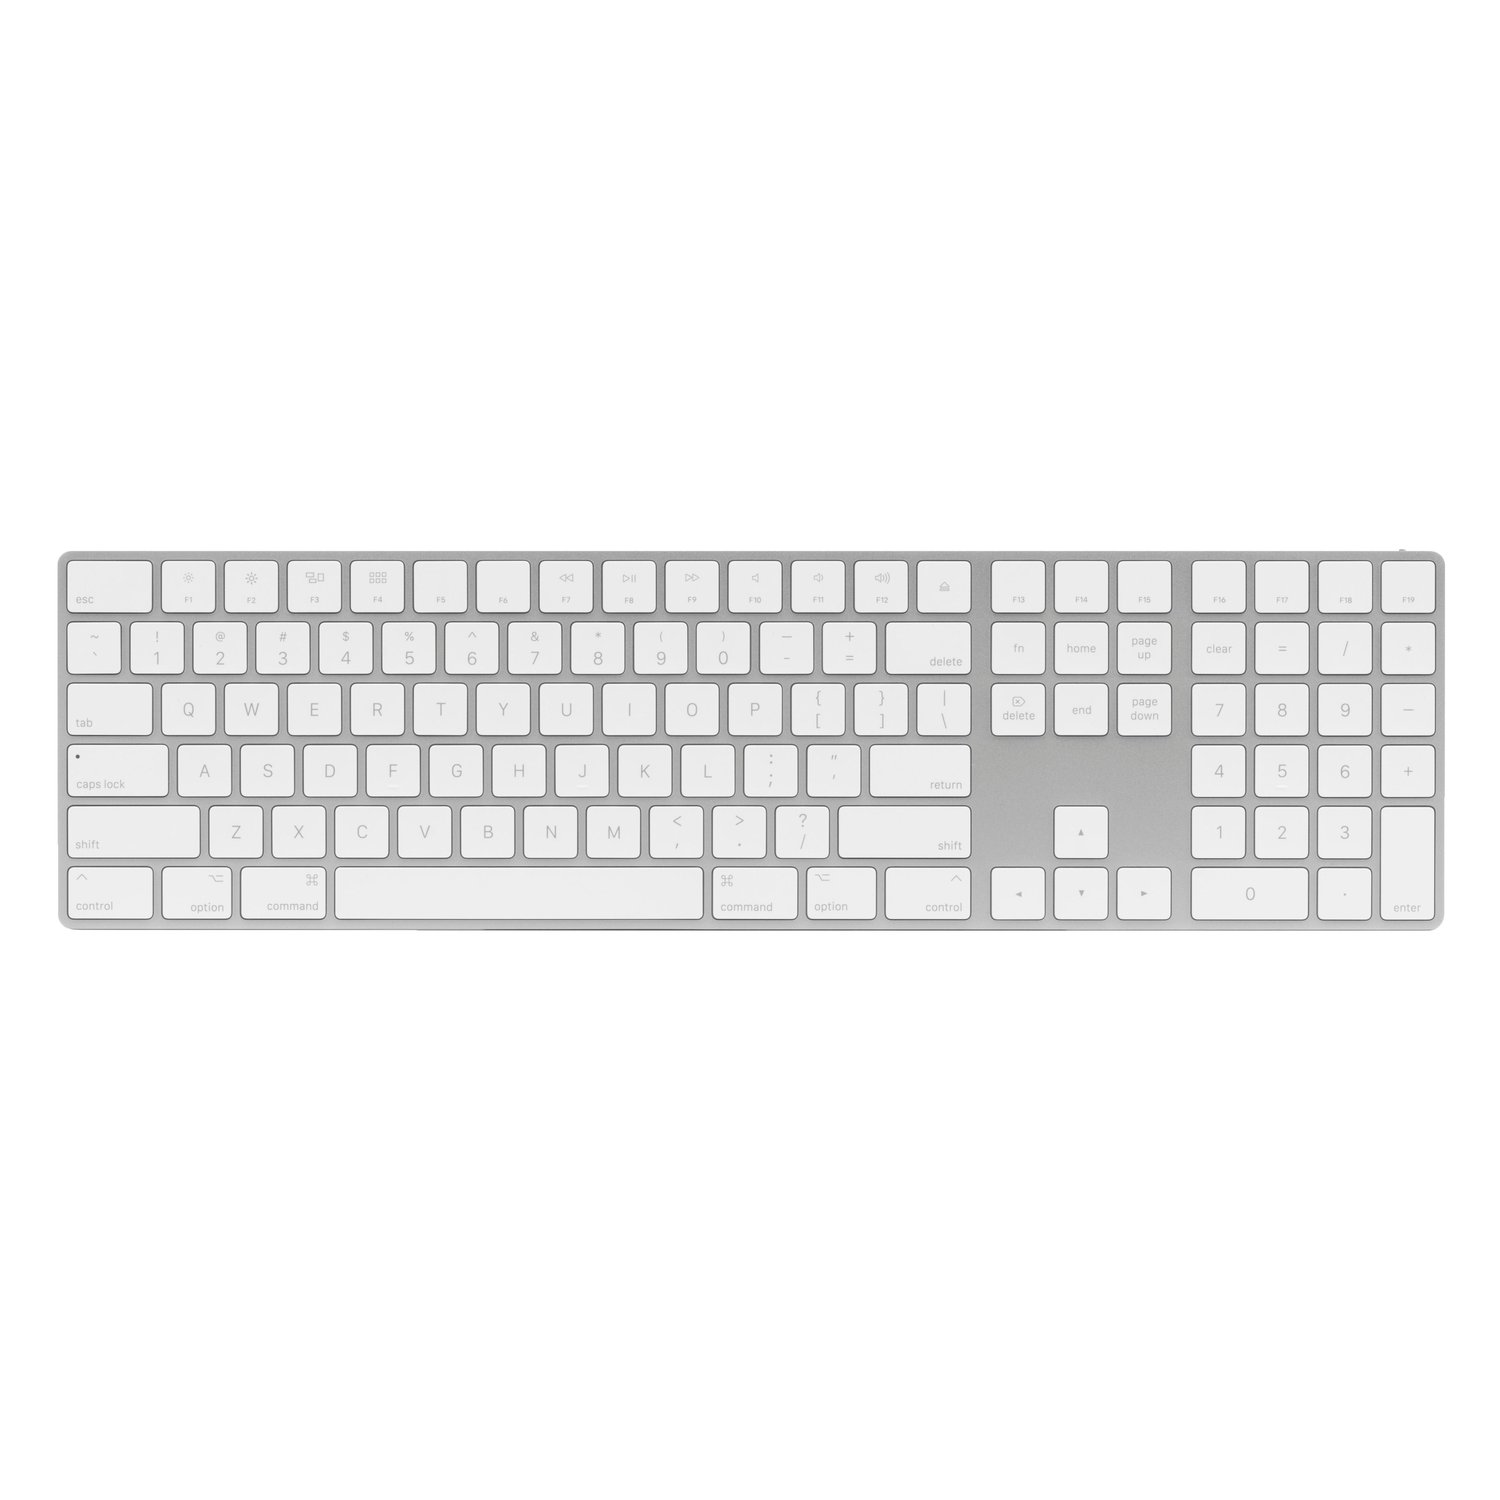 Apple MQ052LL/A Magic Keyboard with Numeric Keypad... at MacSales.com